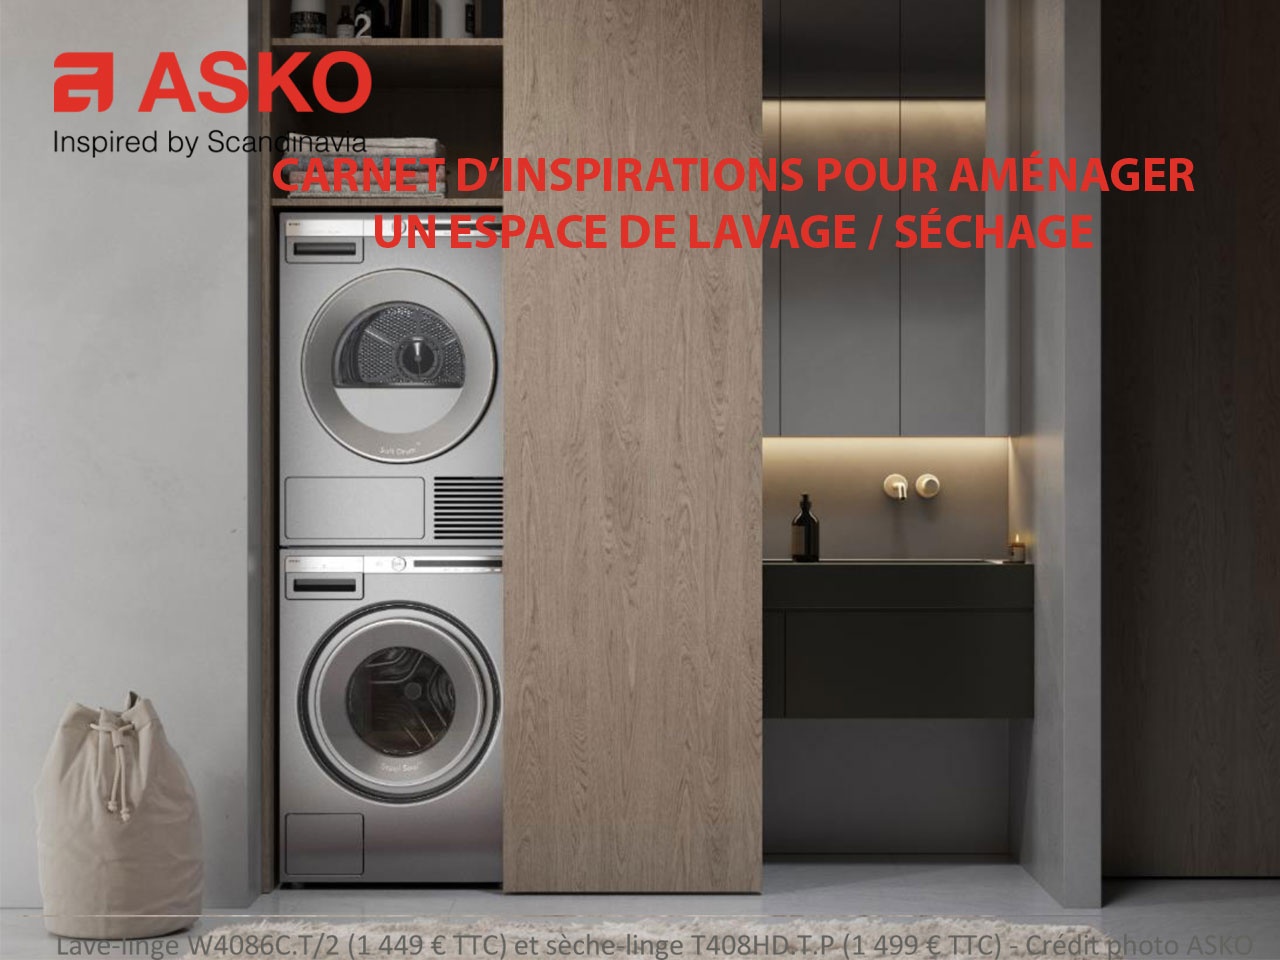 ASKO revisite tous les aménagements d’espaces de lavage/séchage